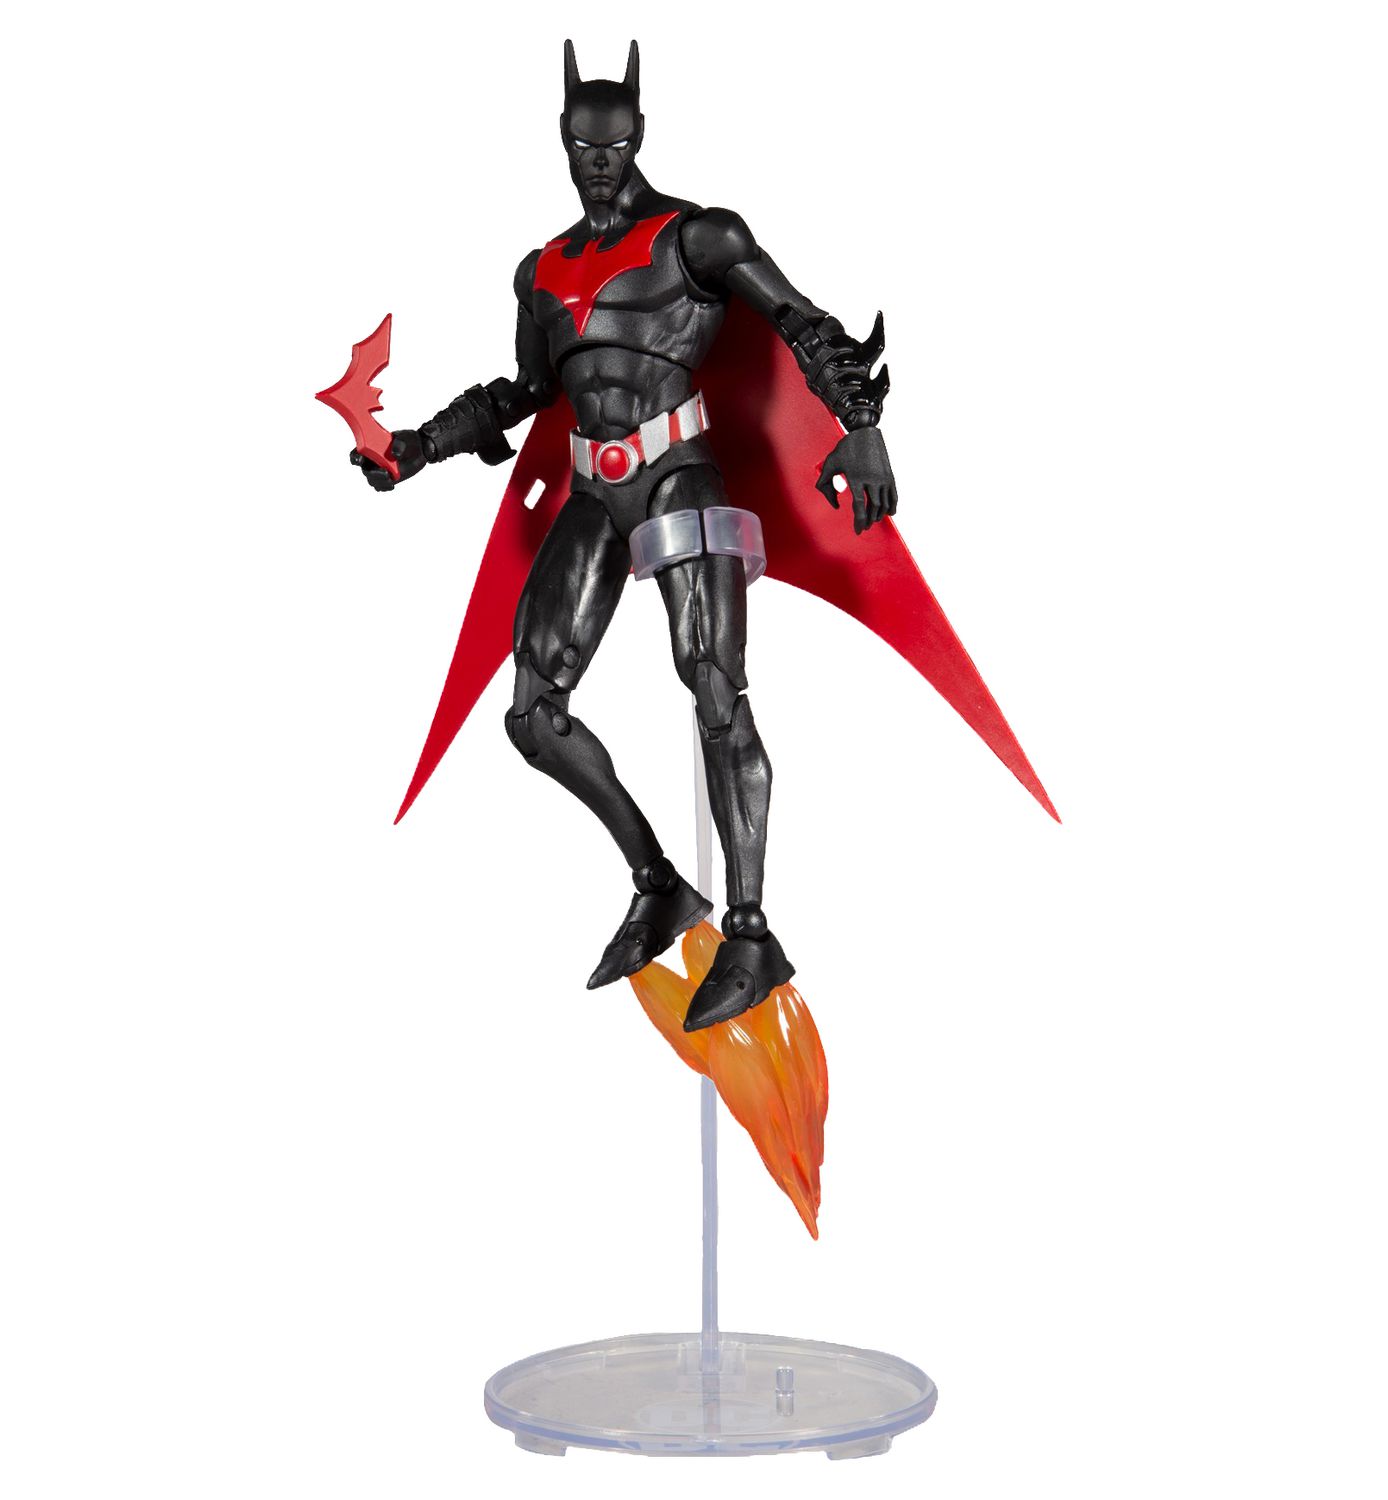 15005-6 for sale online McFarlane Toys Batman 7 inch Action Figure 